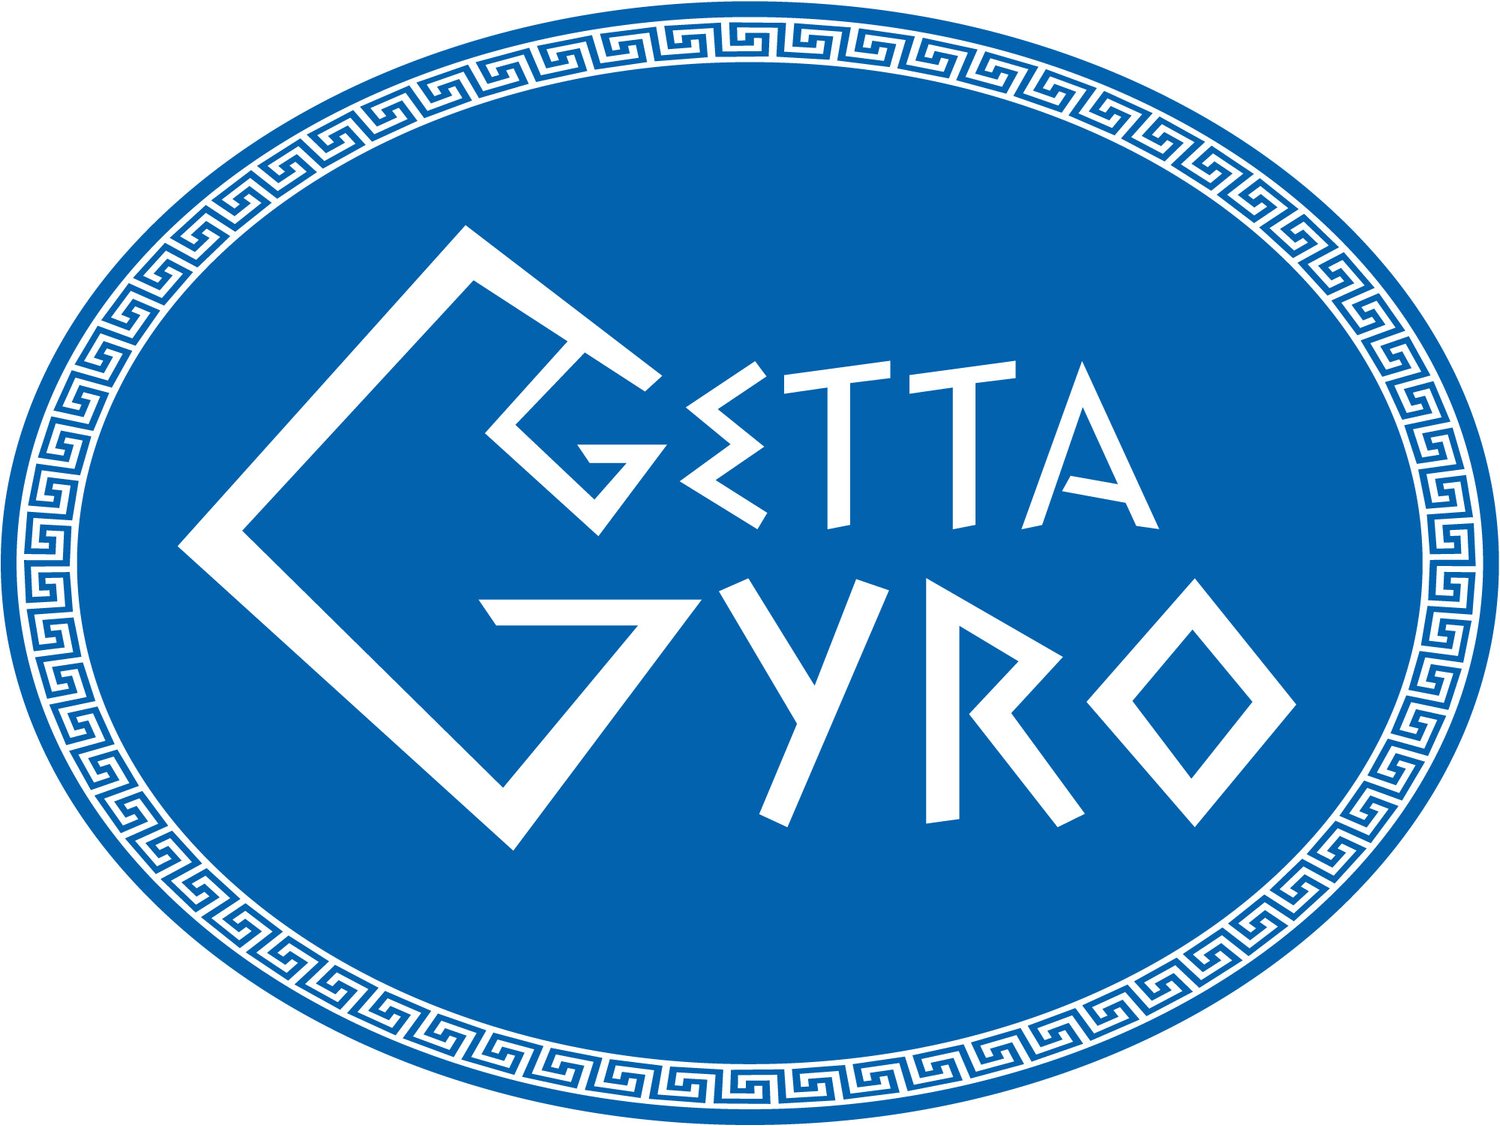 Getta Gyro